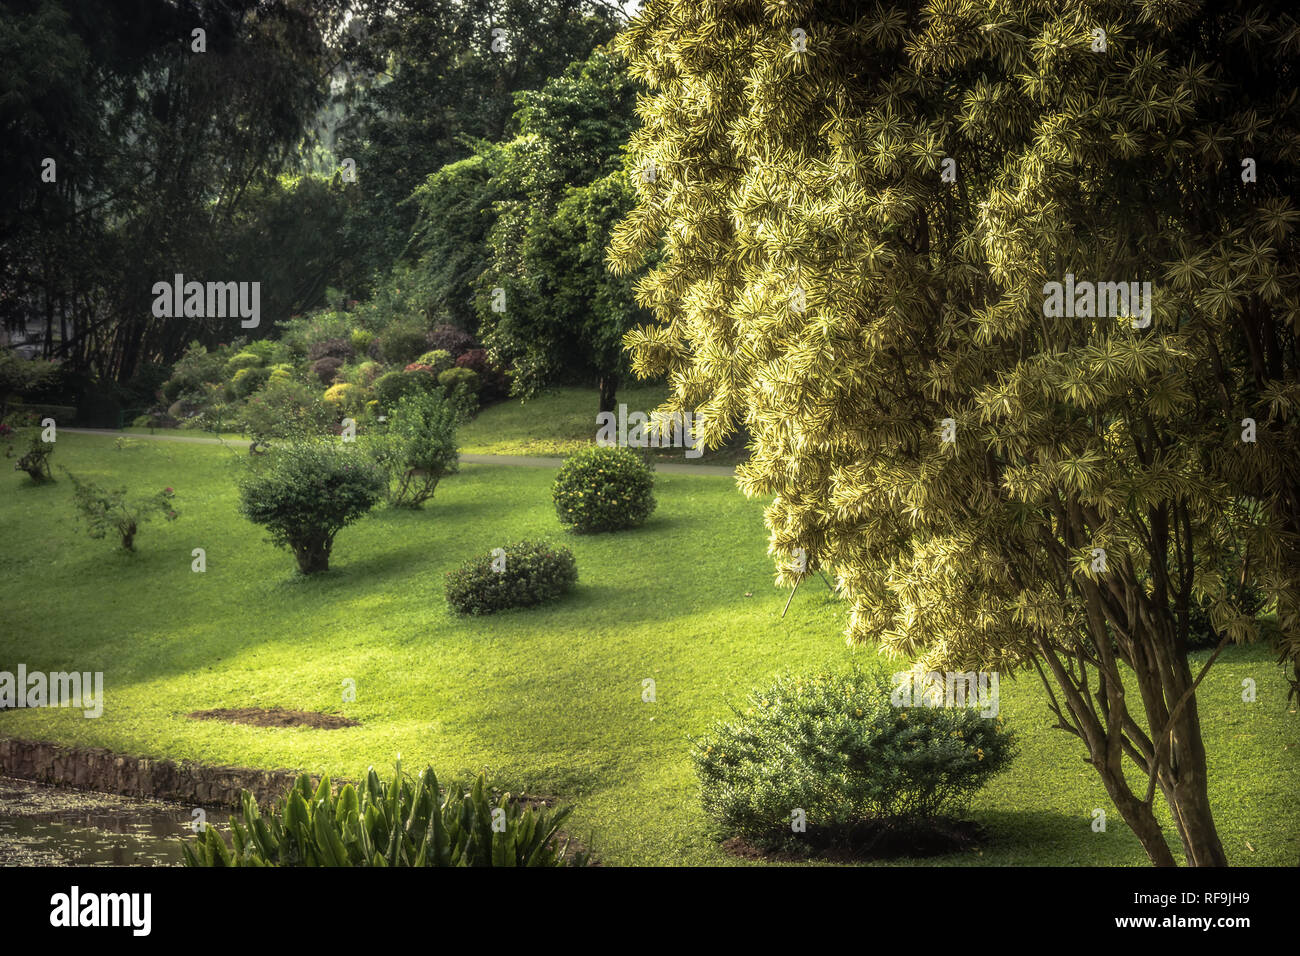 Jardin verdoyant paysage avec la conception de paysage en parc public Royal Garden au Sri Lanka Peradeniya Kandy environs Environs Banque D'Images